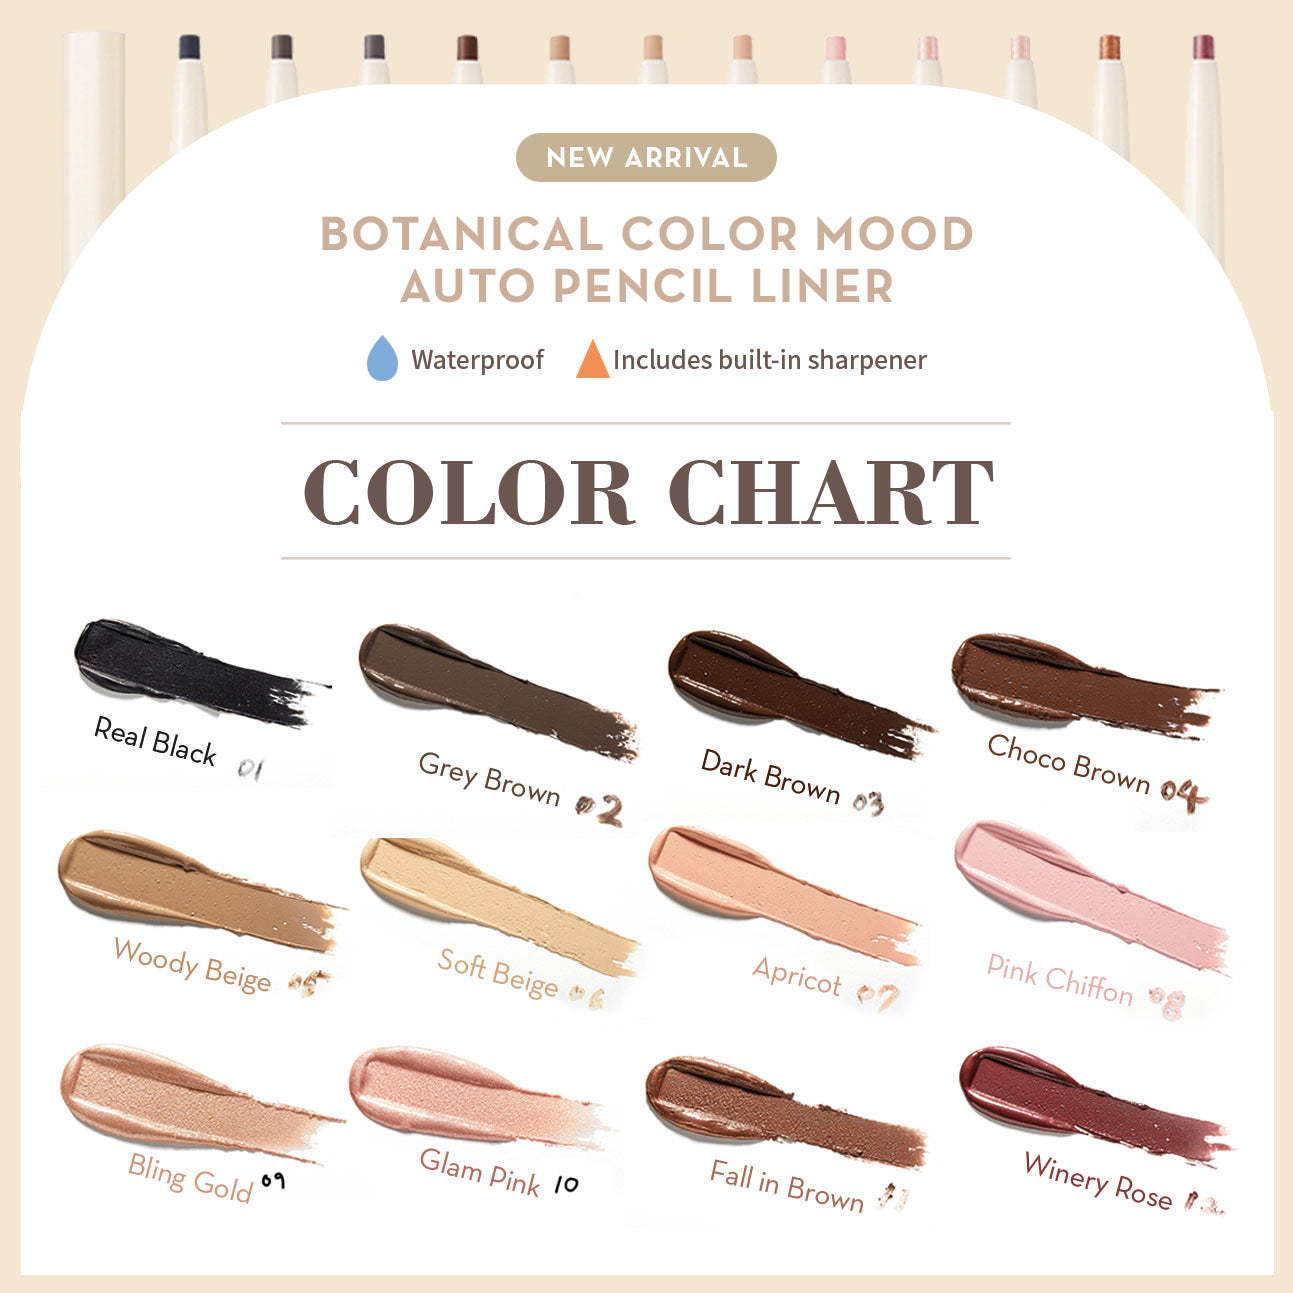 BOTANICAL Color Mood Auto Pencil Liner 07 Apricot